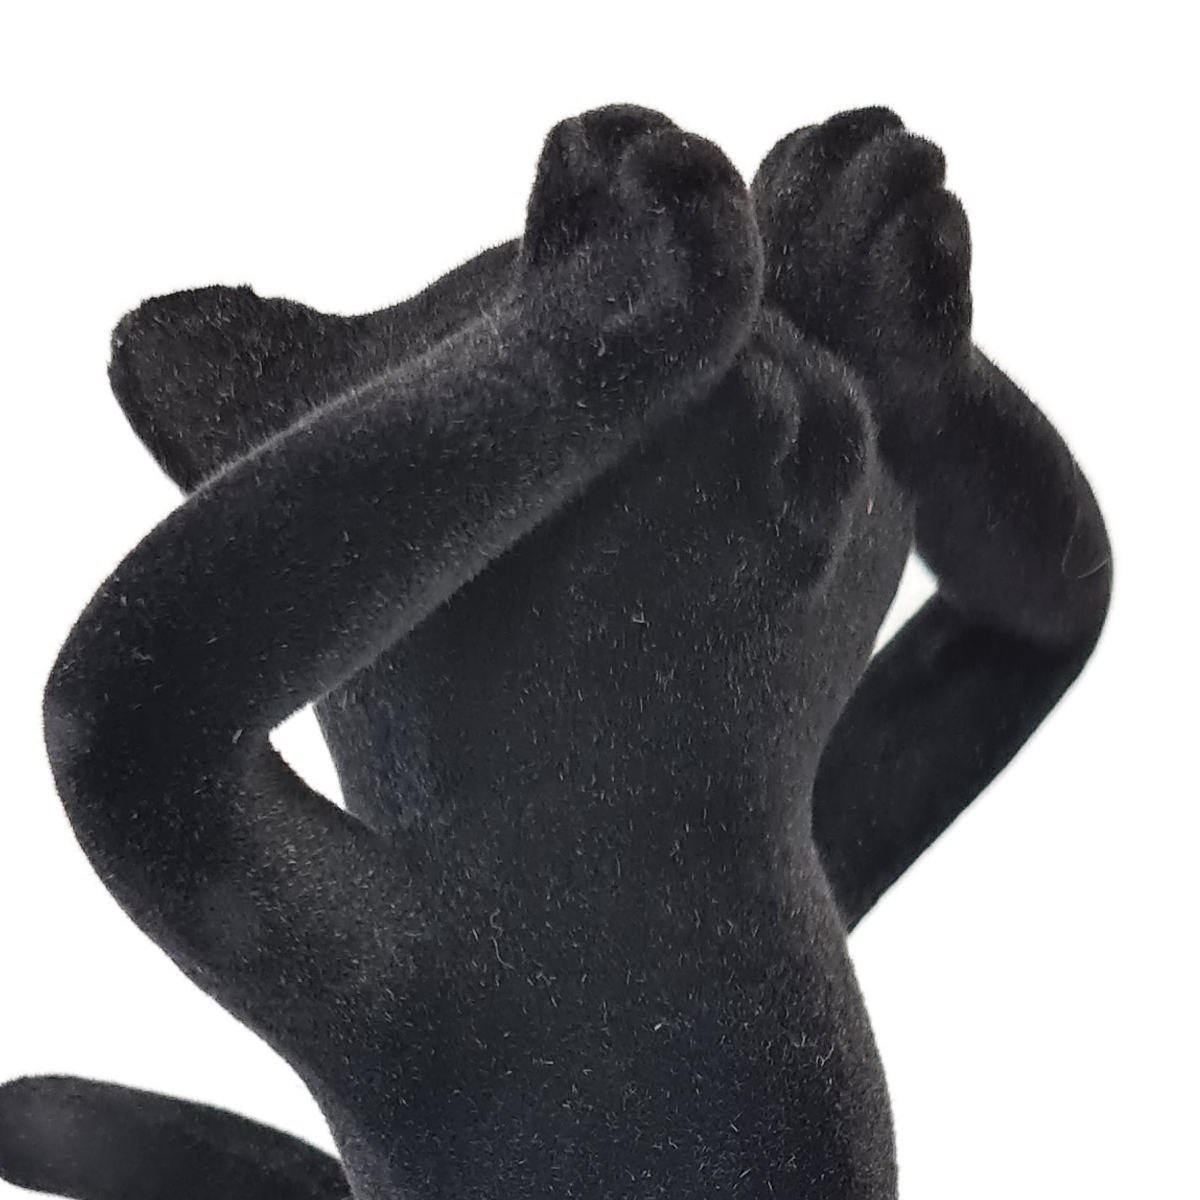 Figurine chat en rsine Noire Floque - Ne Voit Rien